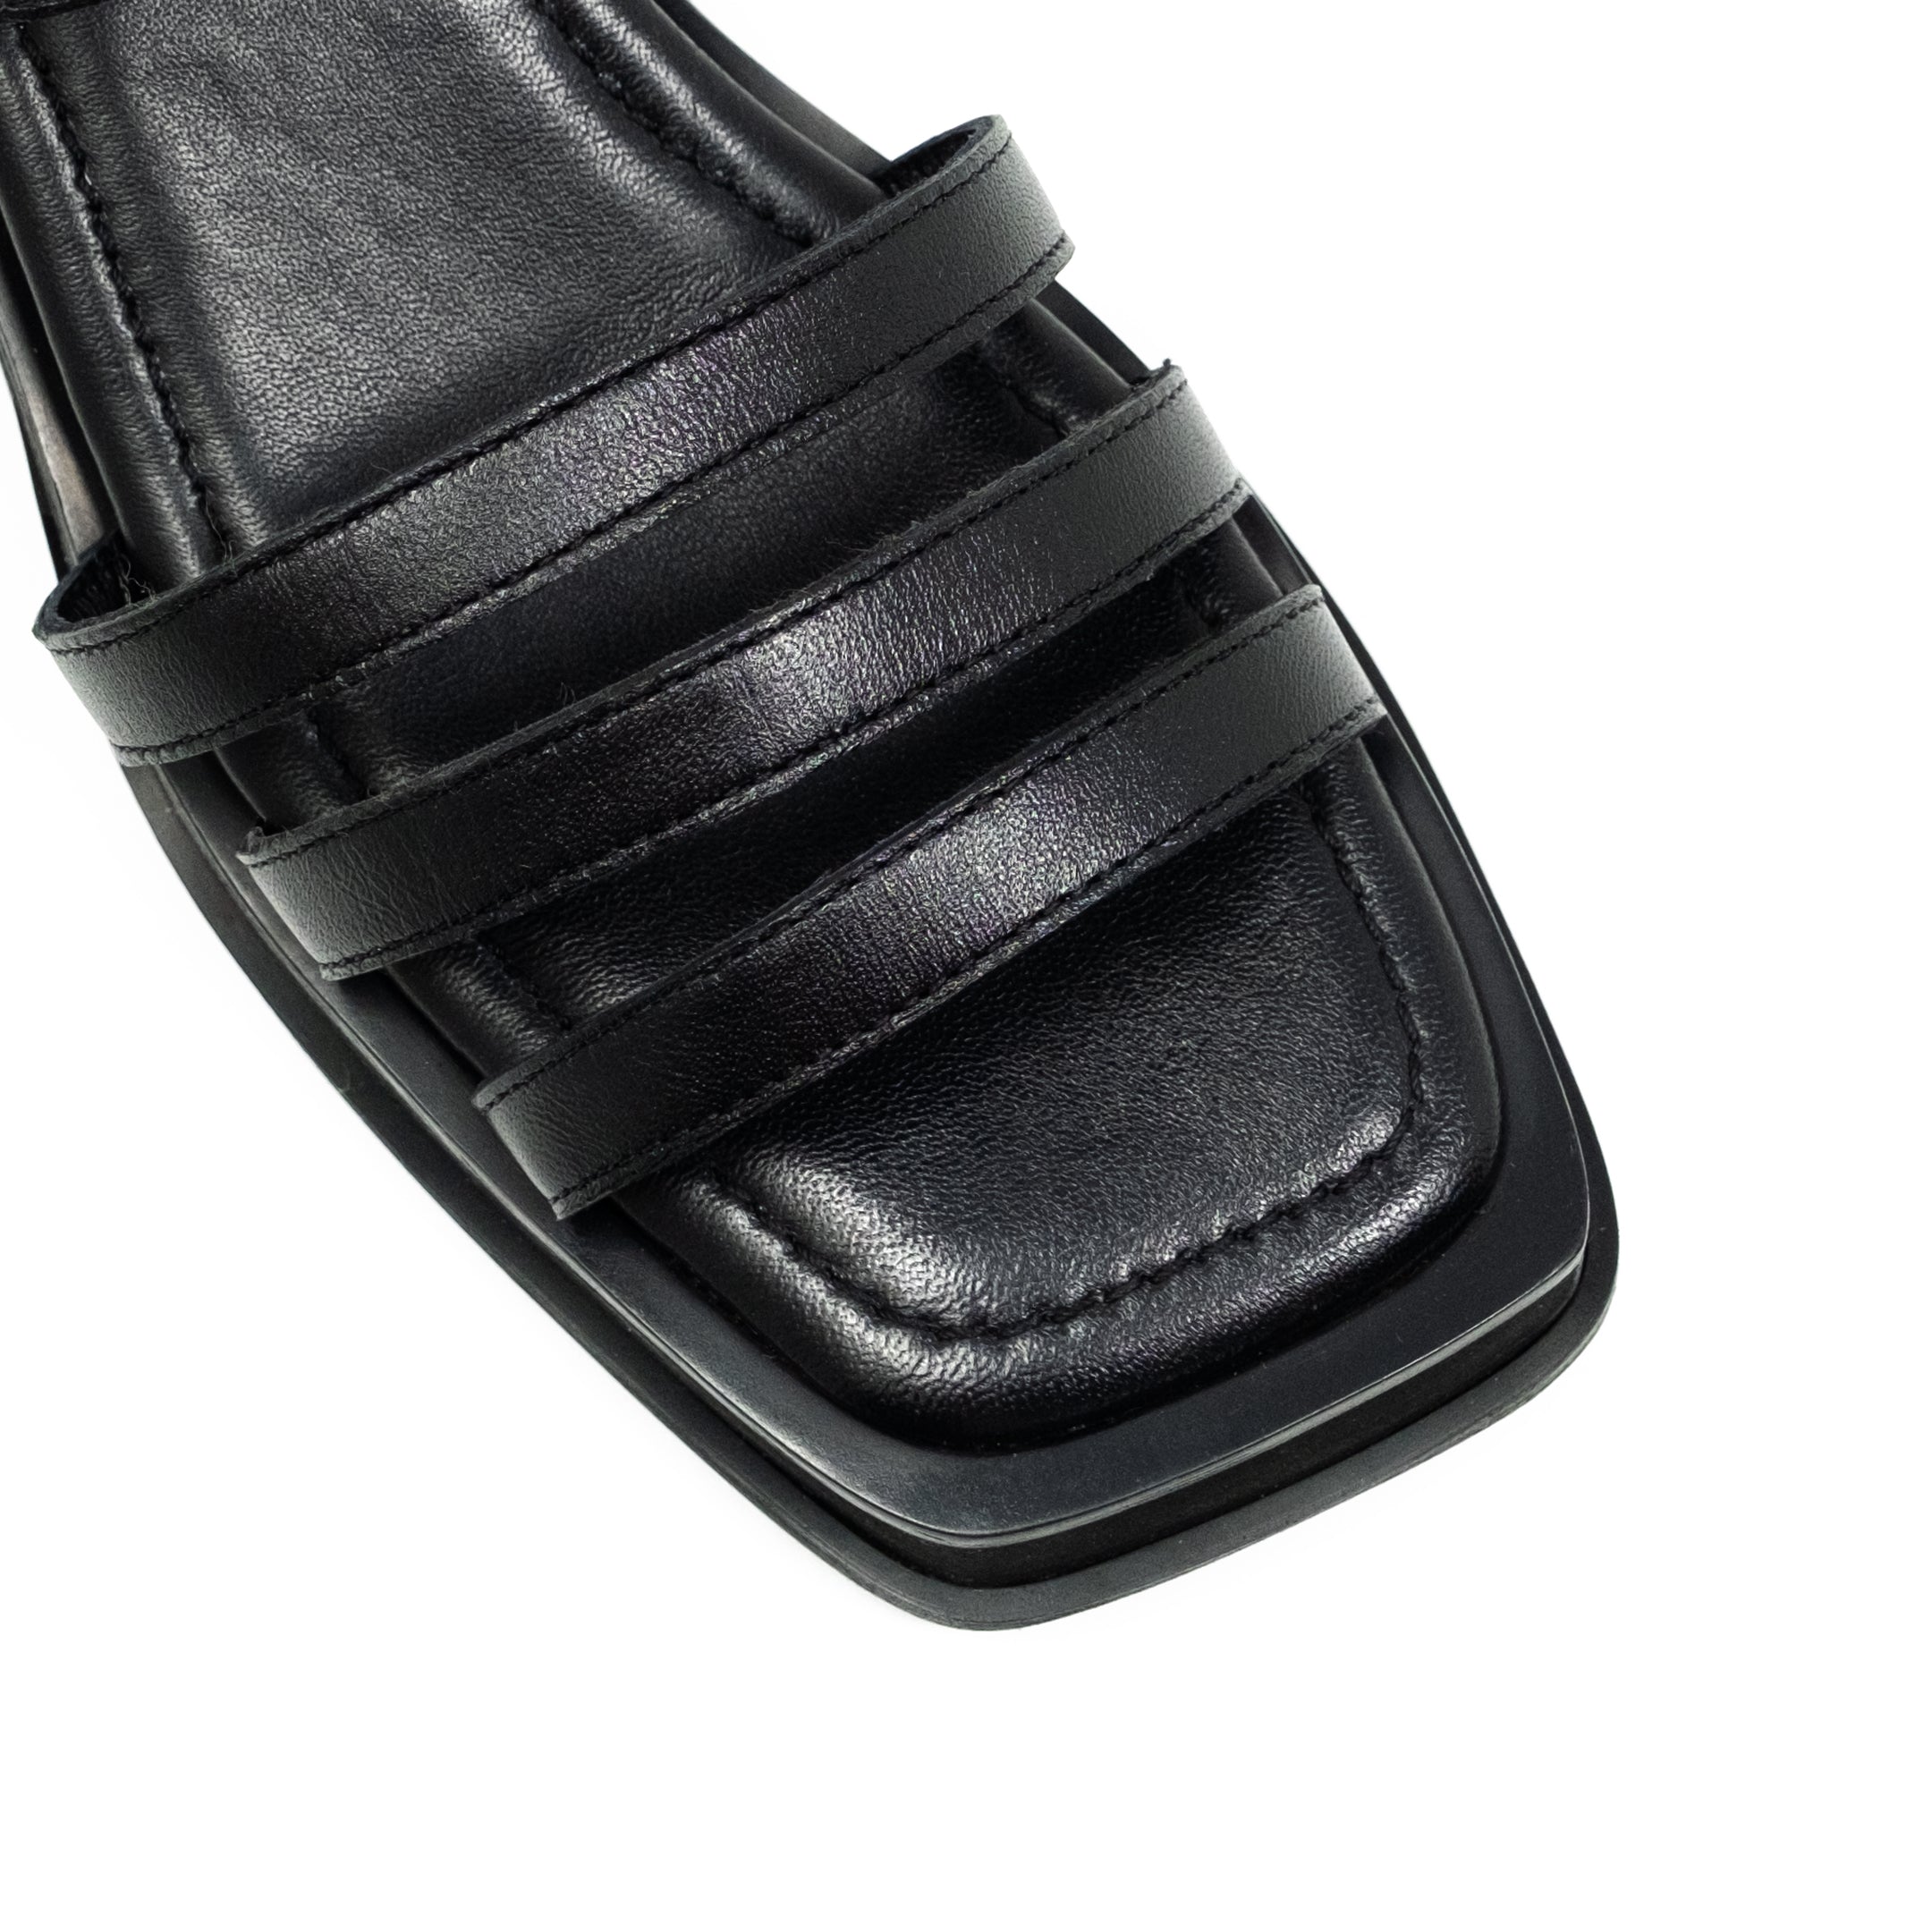 Walk London Lily Ankle Strap Sandal: Black Leather Strap Detail